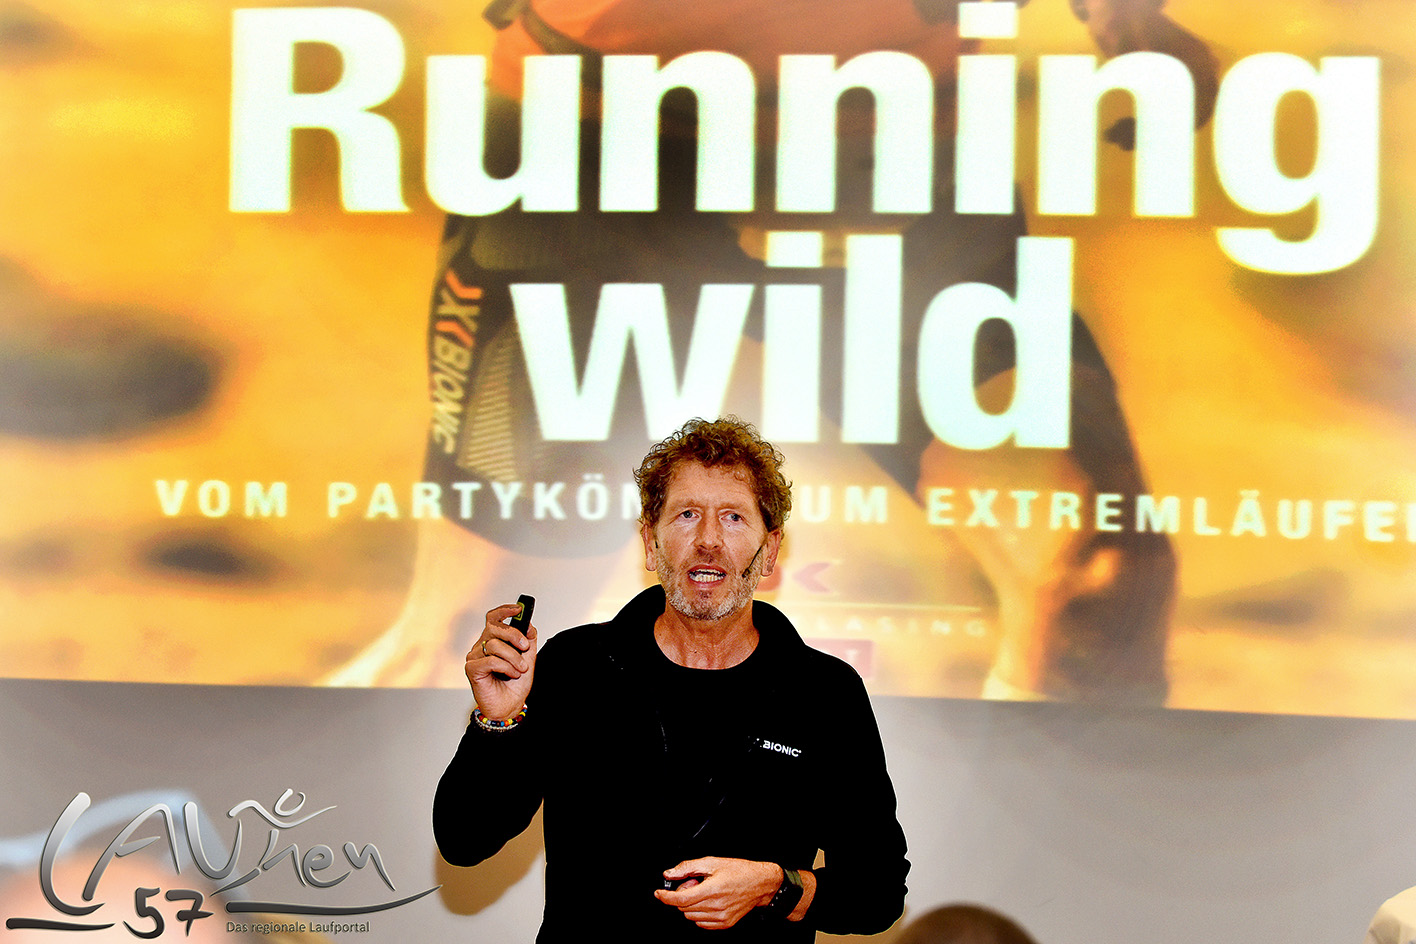 "Running wild": Rafael Fuchsgruber begeisterte im Kino der Krombacher Brauerei mit seinem Vortrag über seine Erlebnisse als Extremläufer  in den Wüsten der Welt.